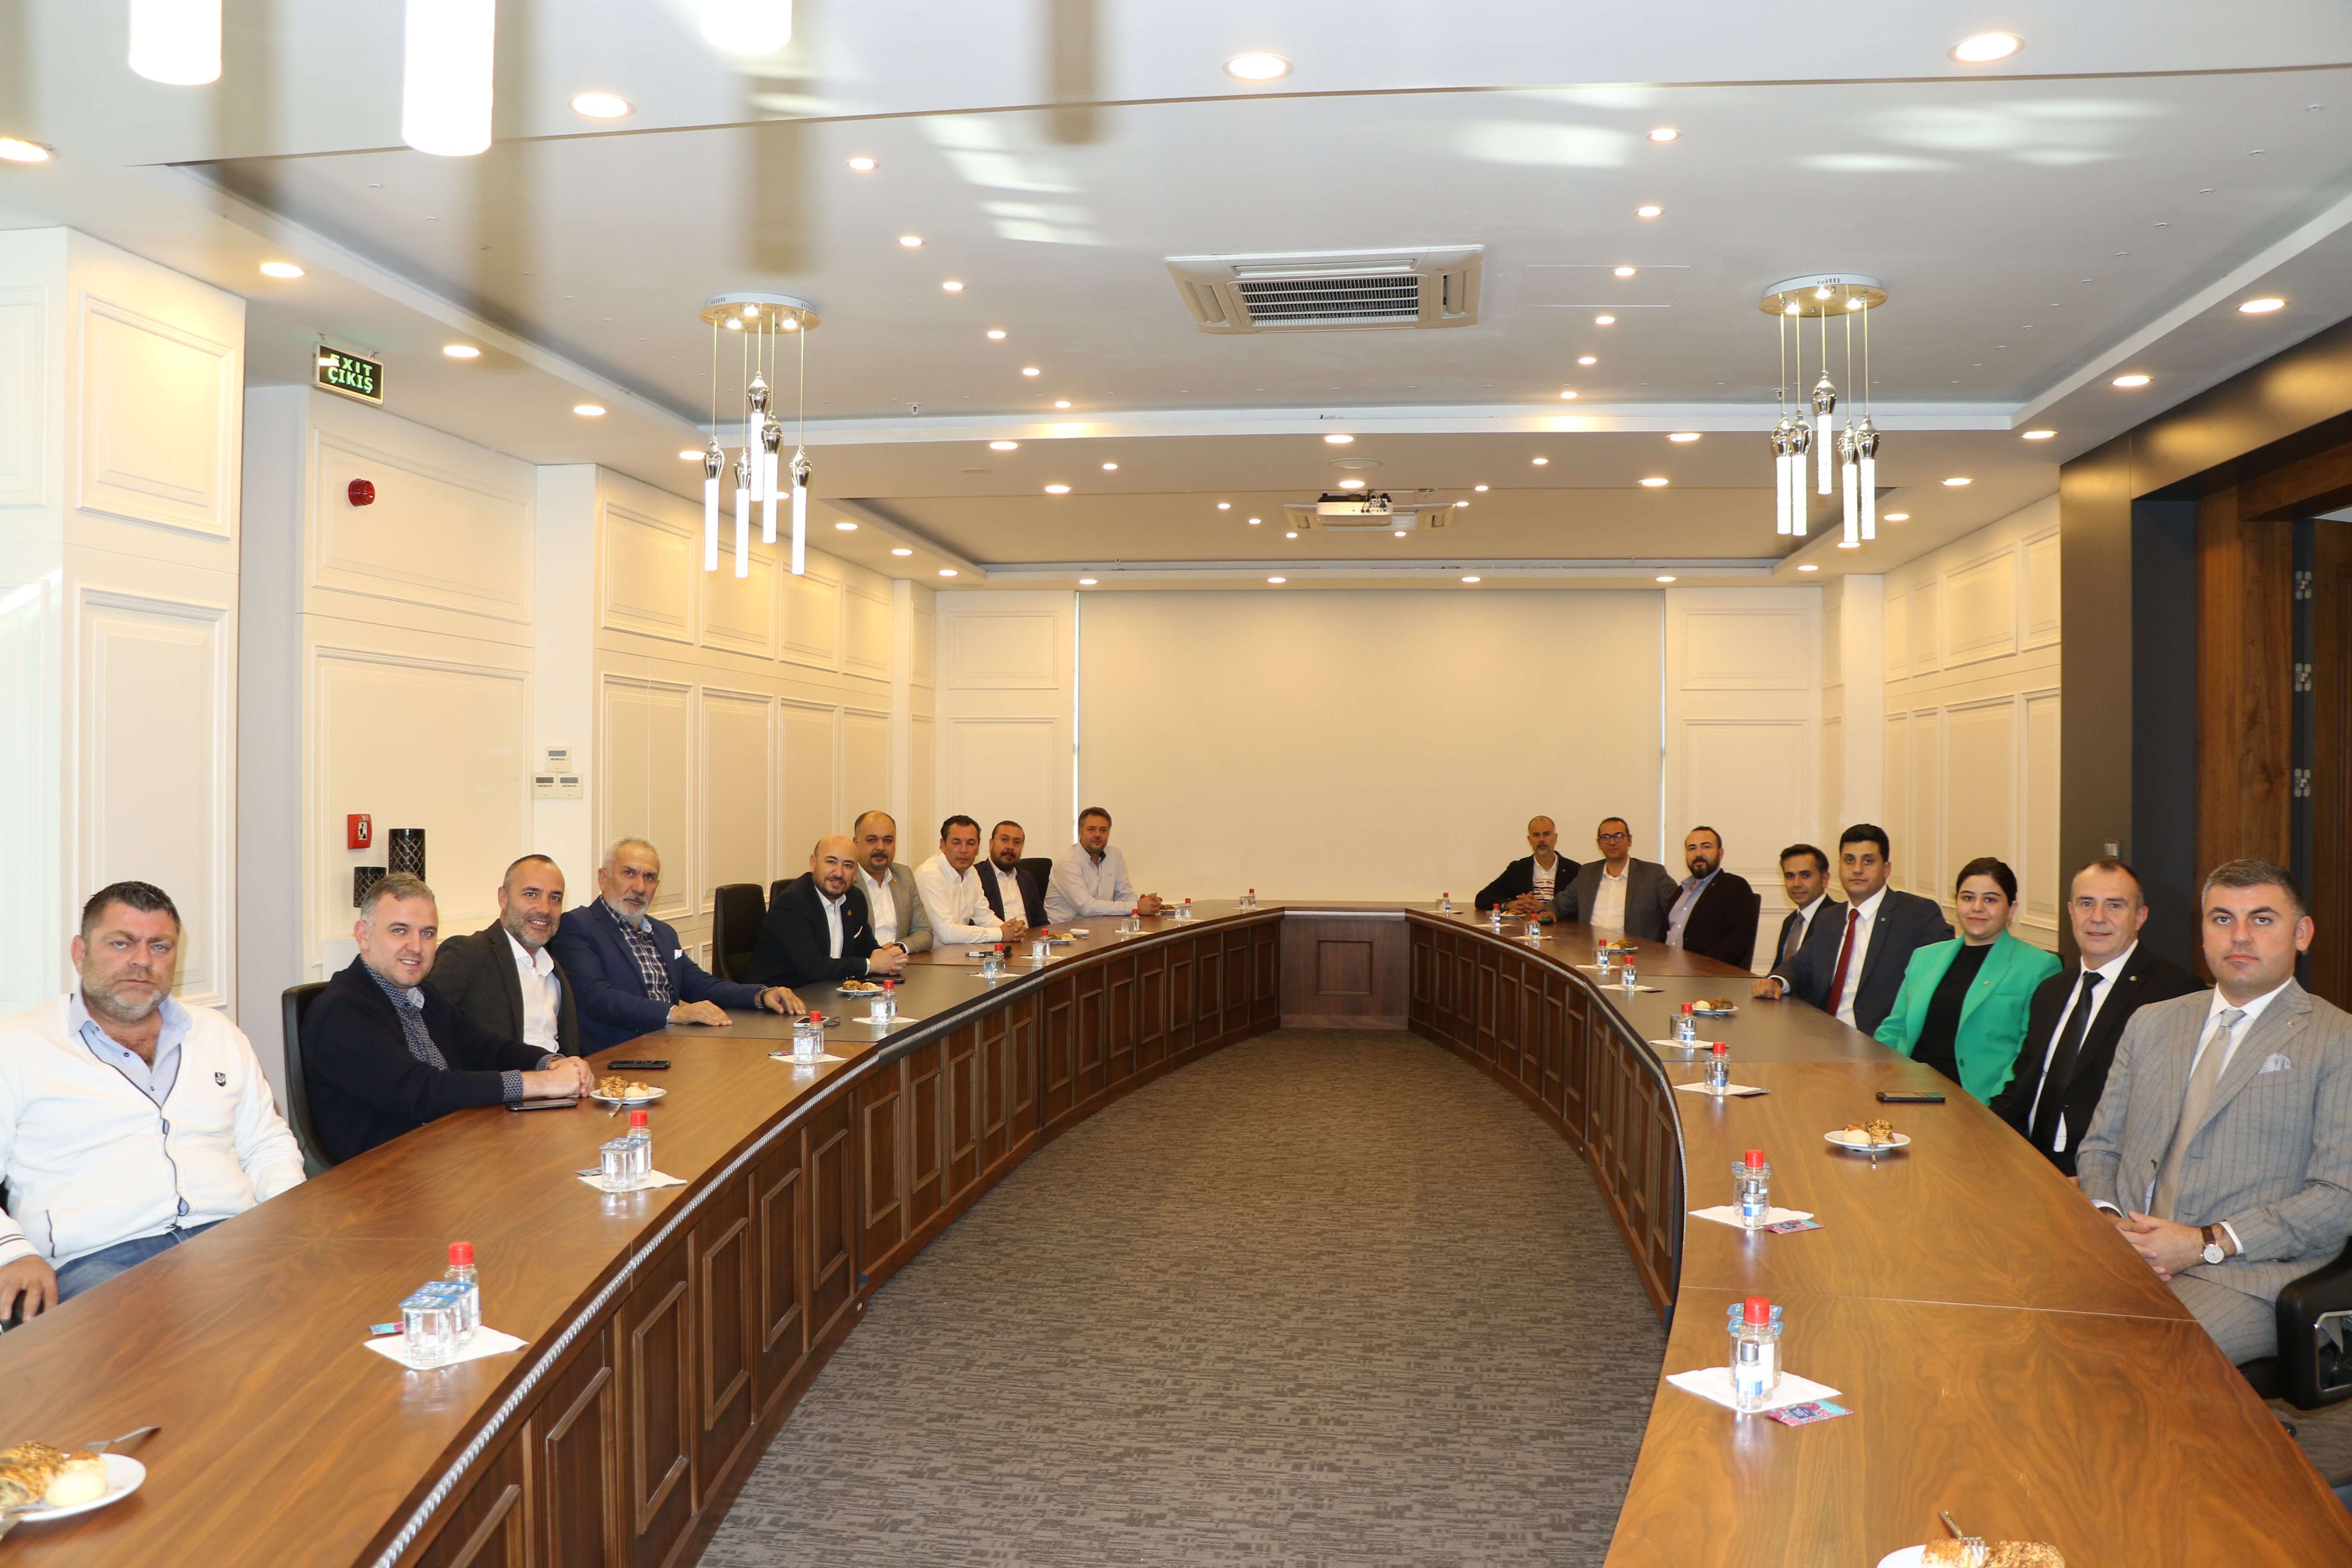 Aydın Sanayi Odası Yönetim Kurulu Başkanı Gökhan MARAŞ, Meclis Başkanı Hakkı GÖZLÜKLÜ ve Yönetim Kurulu Üyeleri, Aydın Ticaret Odası’na ziyaret gerçekleştirdiler.